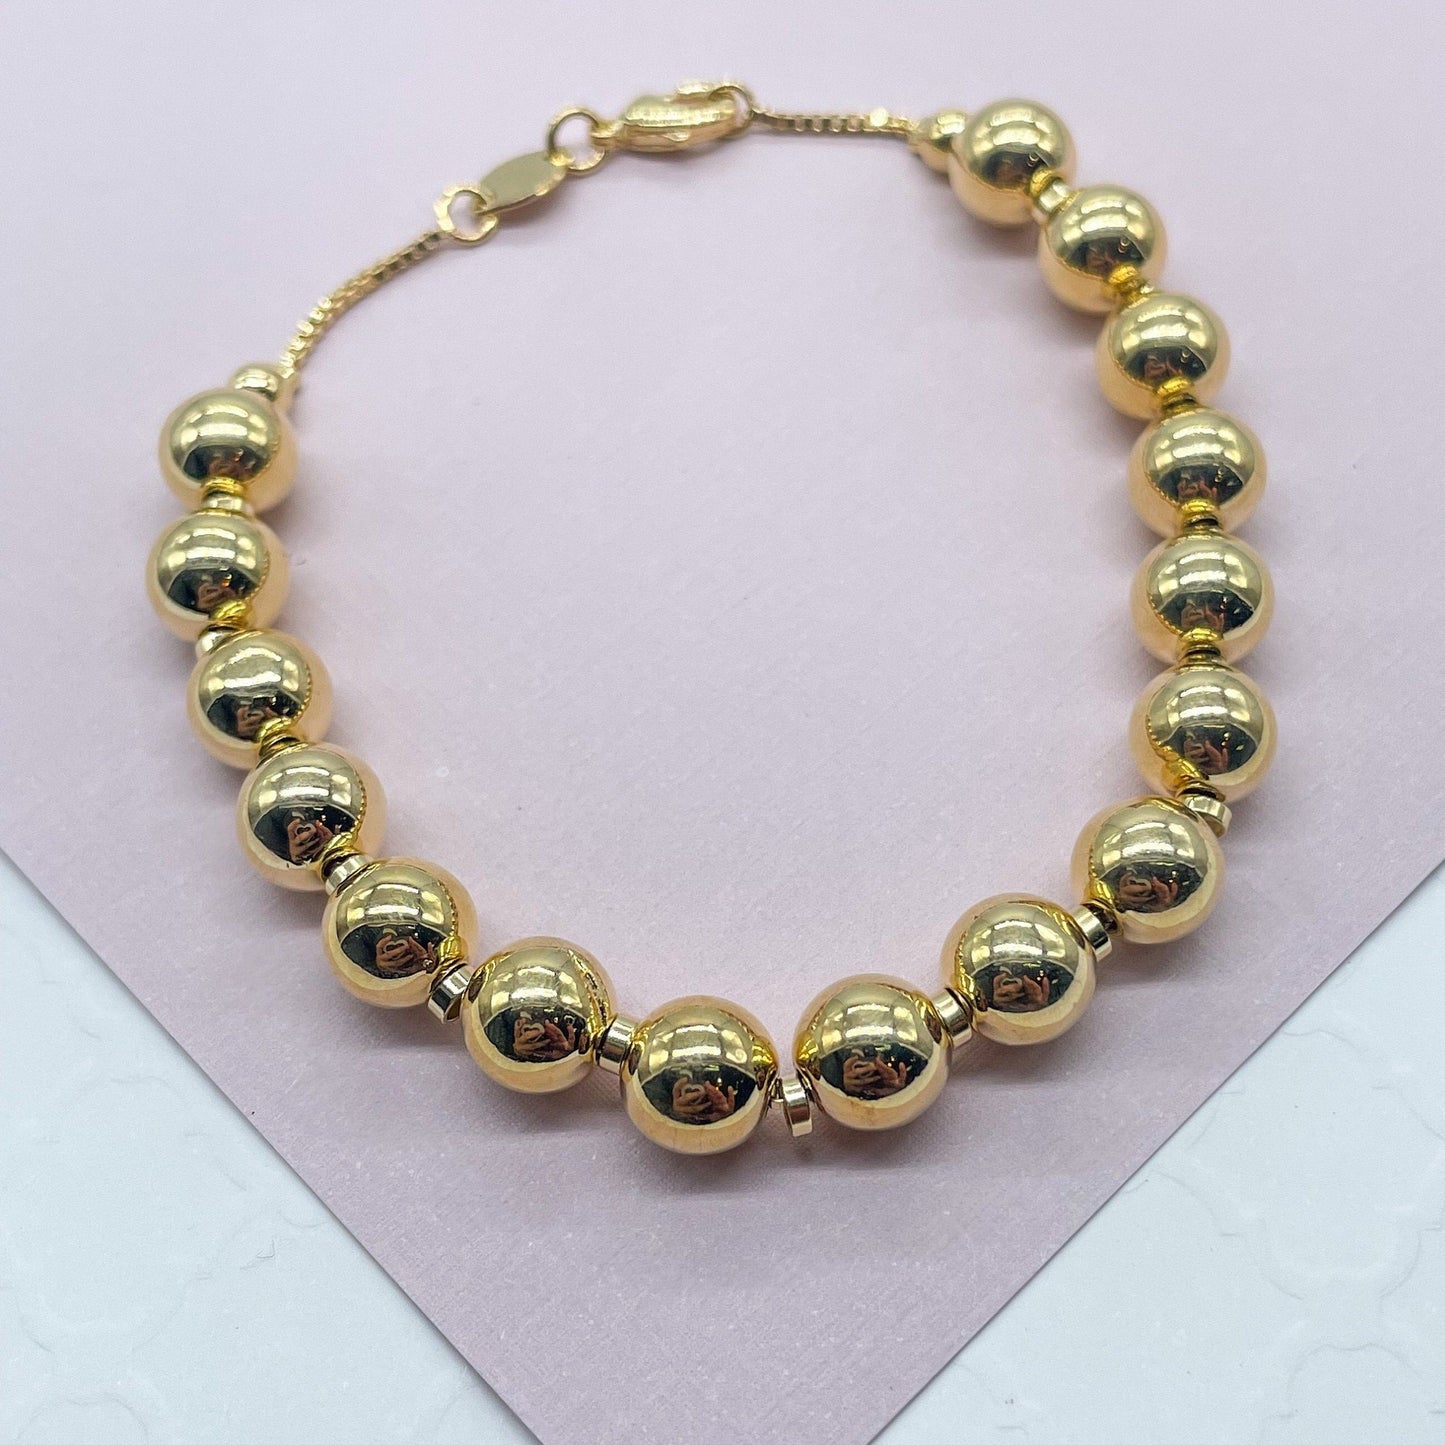 18k White Gold Bead Bracelet - 2mm - Women or Men's Bracelet